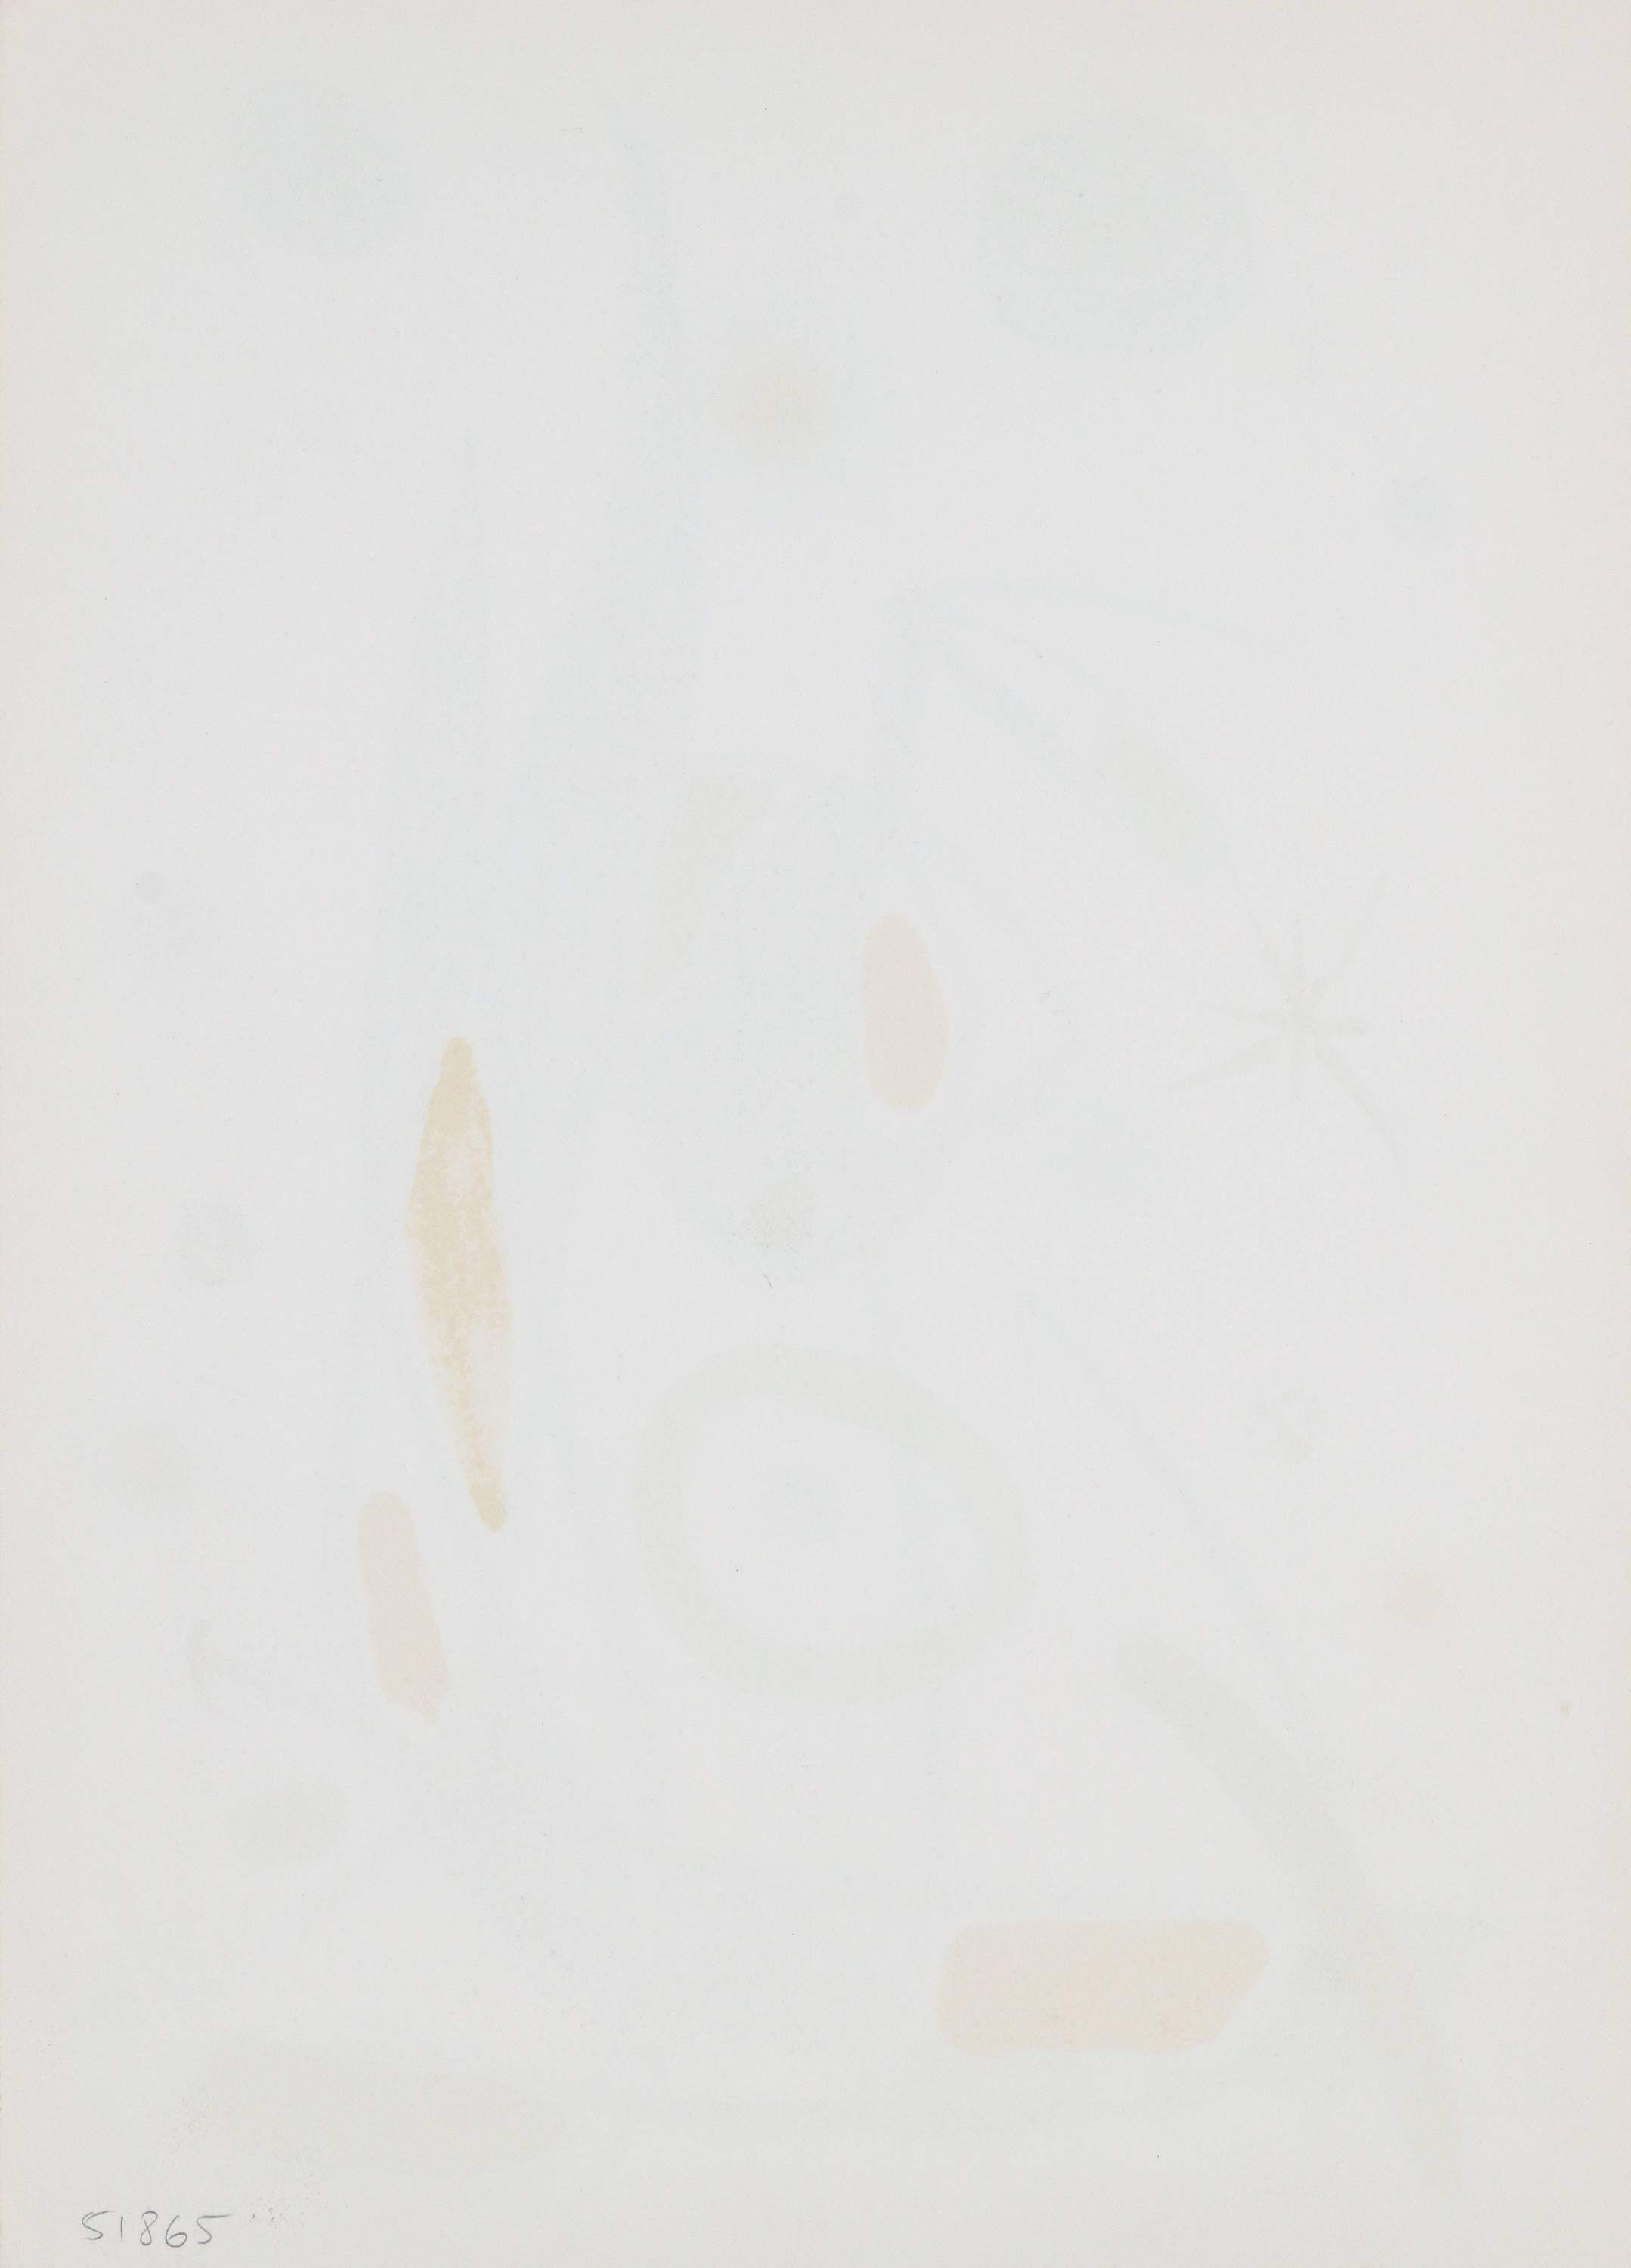 Meravillas con Variaciones Acrosticas en el Jardin de Miro' - Modern Print by Joan Miró